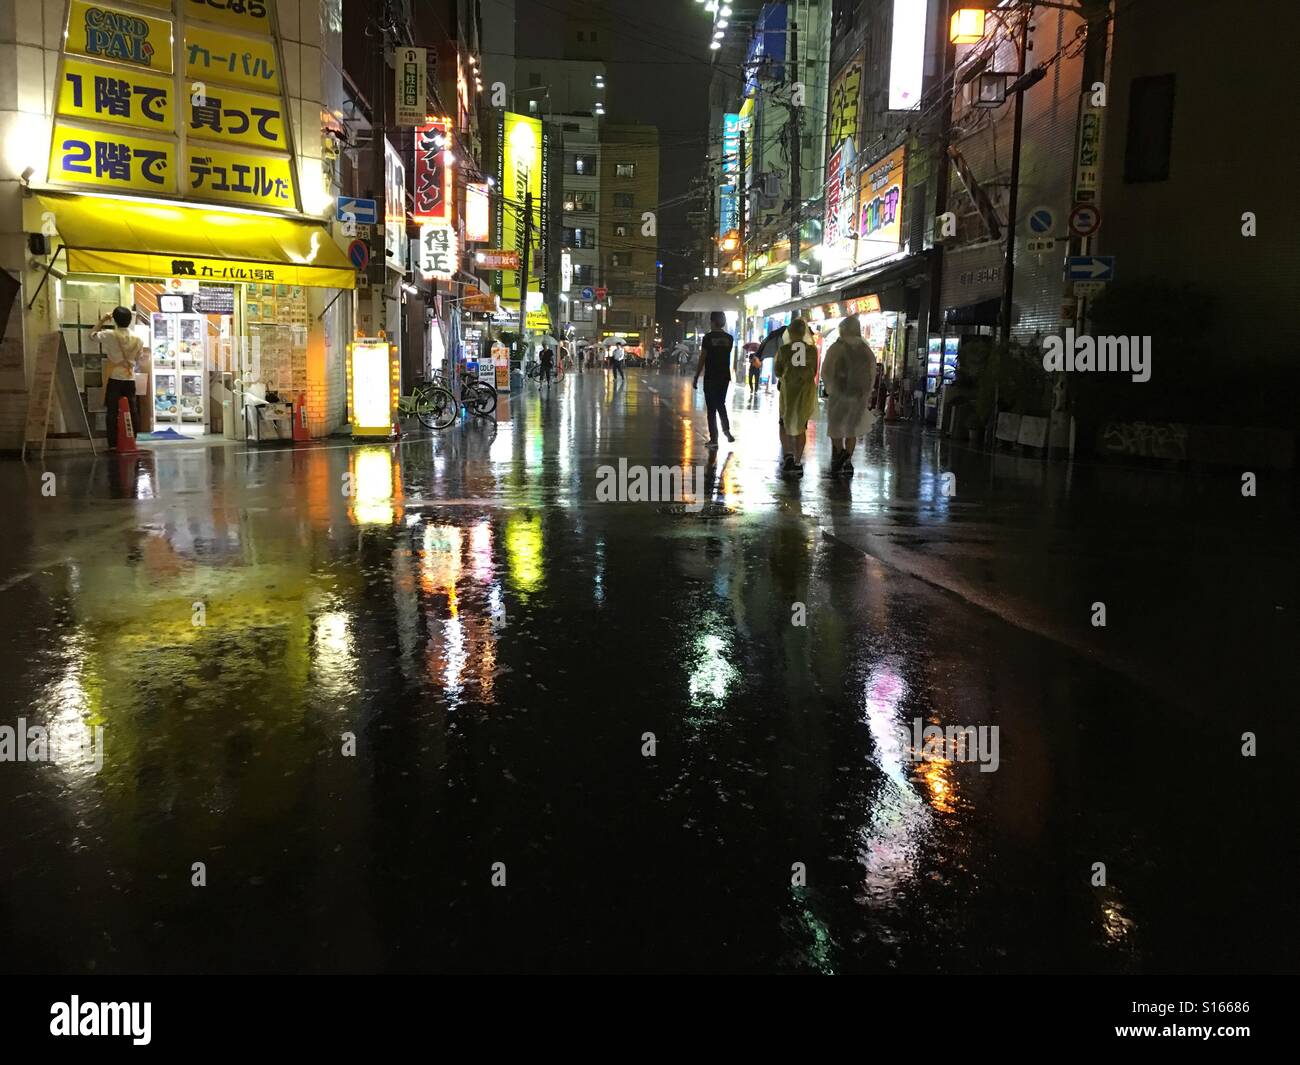 Rainy night in Osaka, Japan Stock Photo